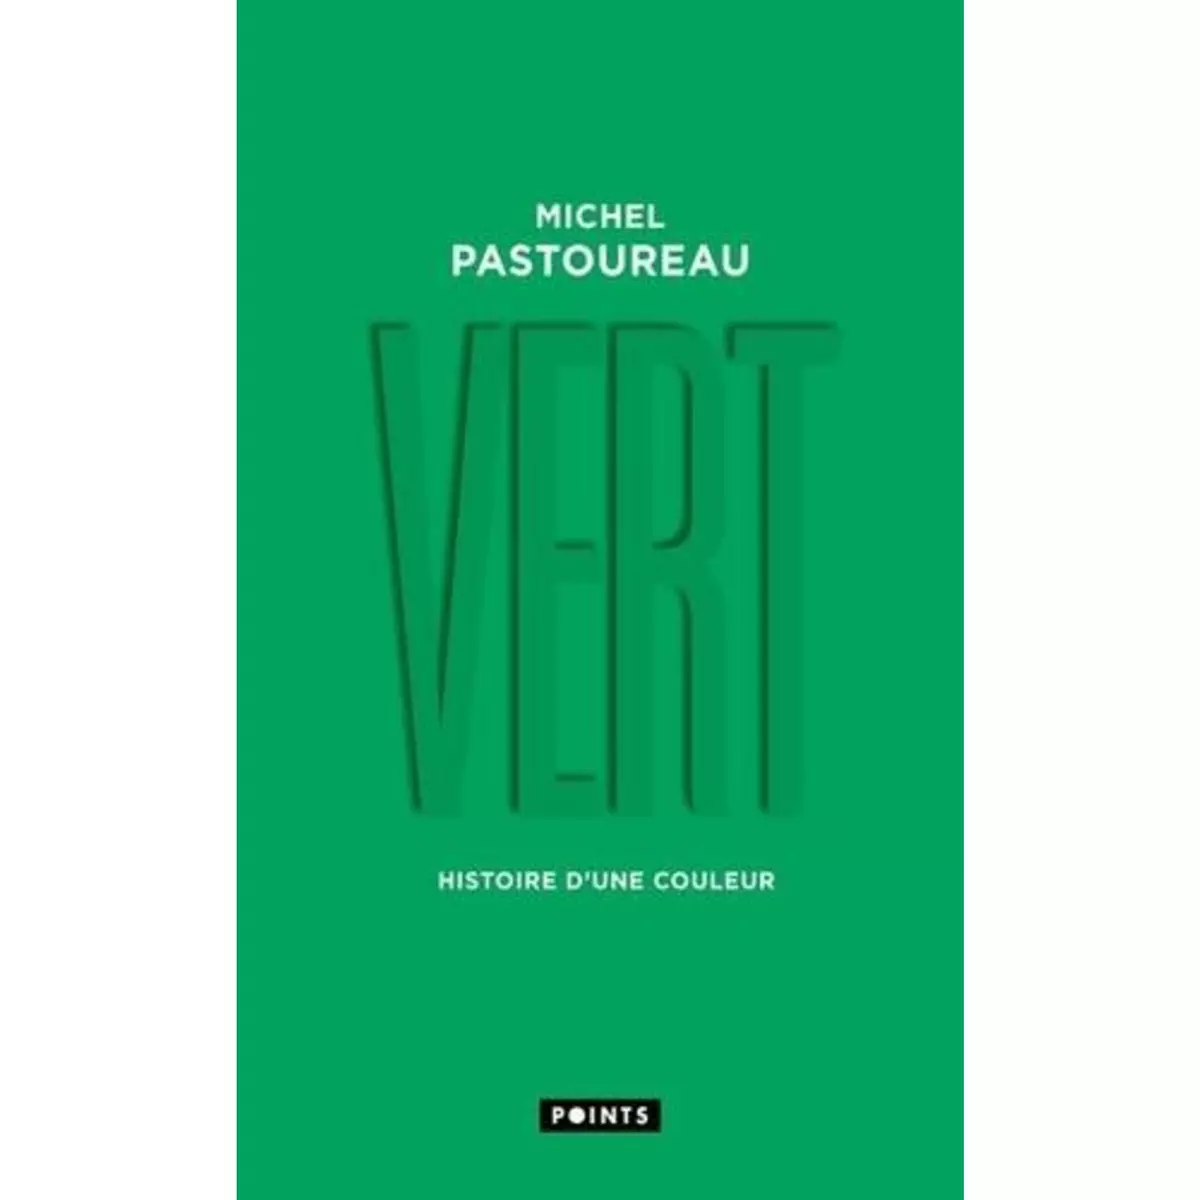  VERT. HISTOIRE D'UNE COULEUR, Pastoureau Michel